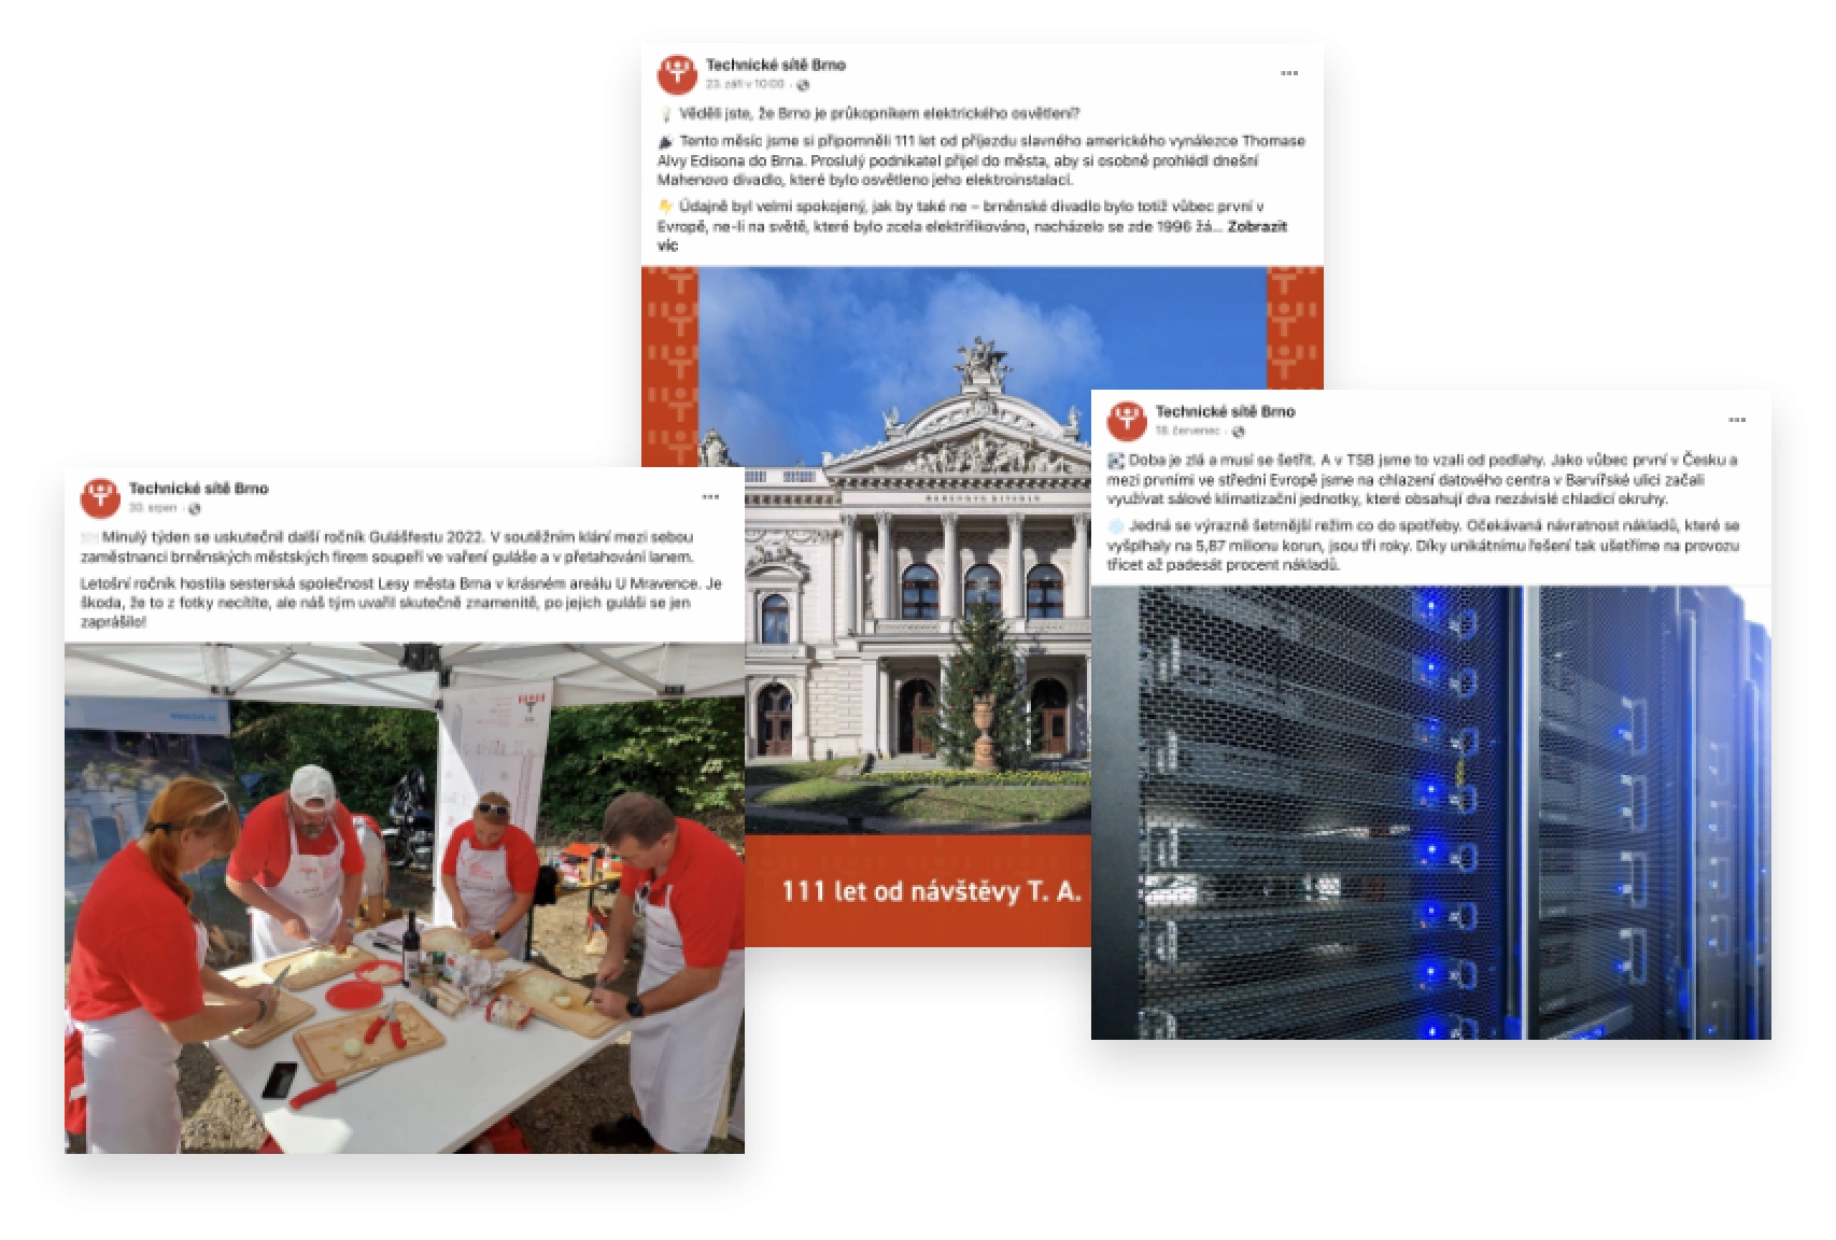 Technické sítě Brno social media examples